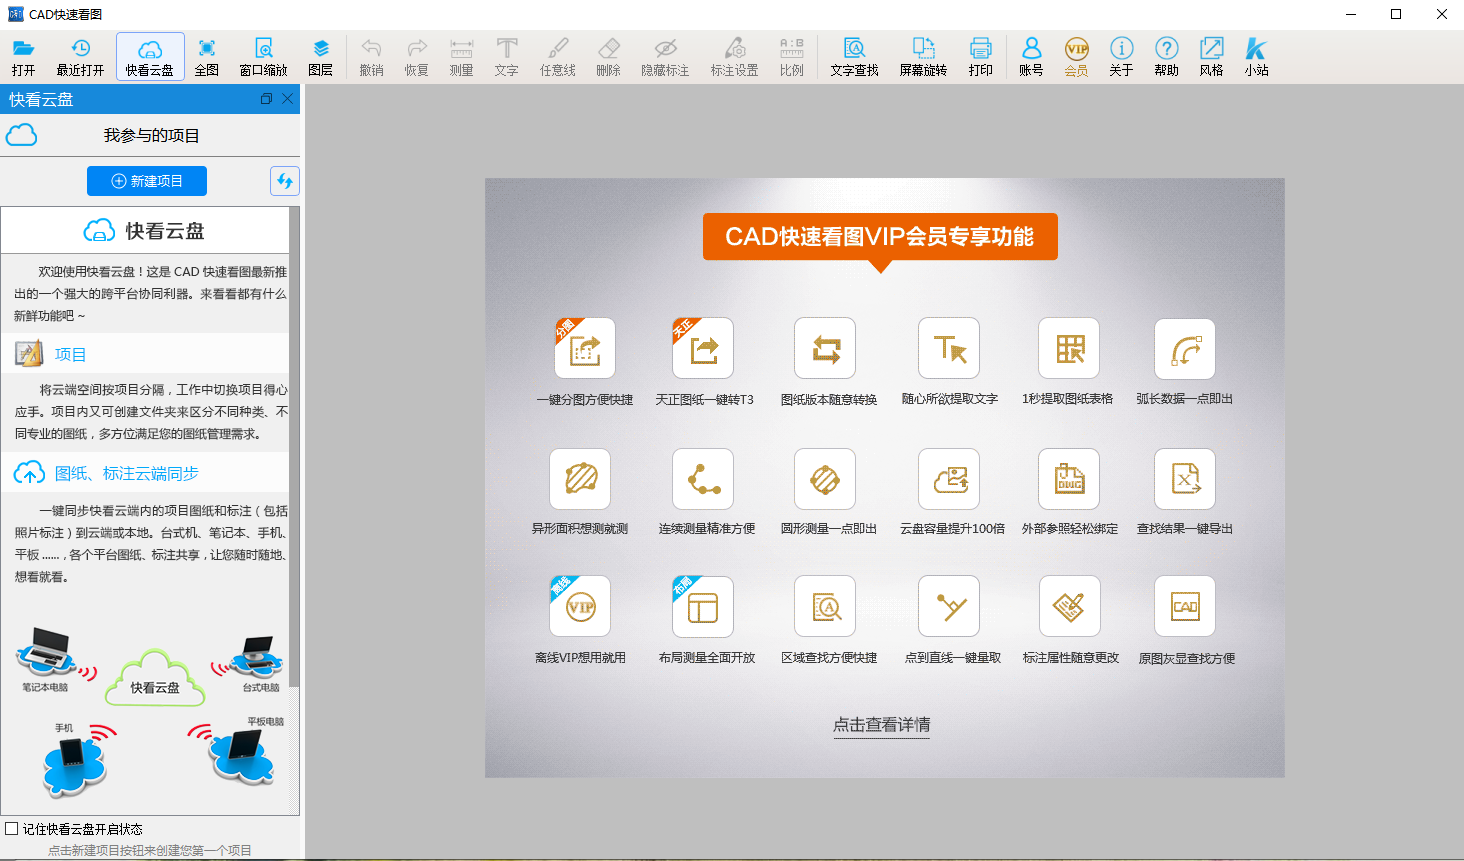 CAD快速看图 v5.3.2.38【破解补丁+安装教程】永久会员中文版安装图文教程、破解注册方法